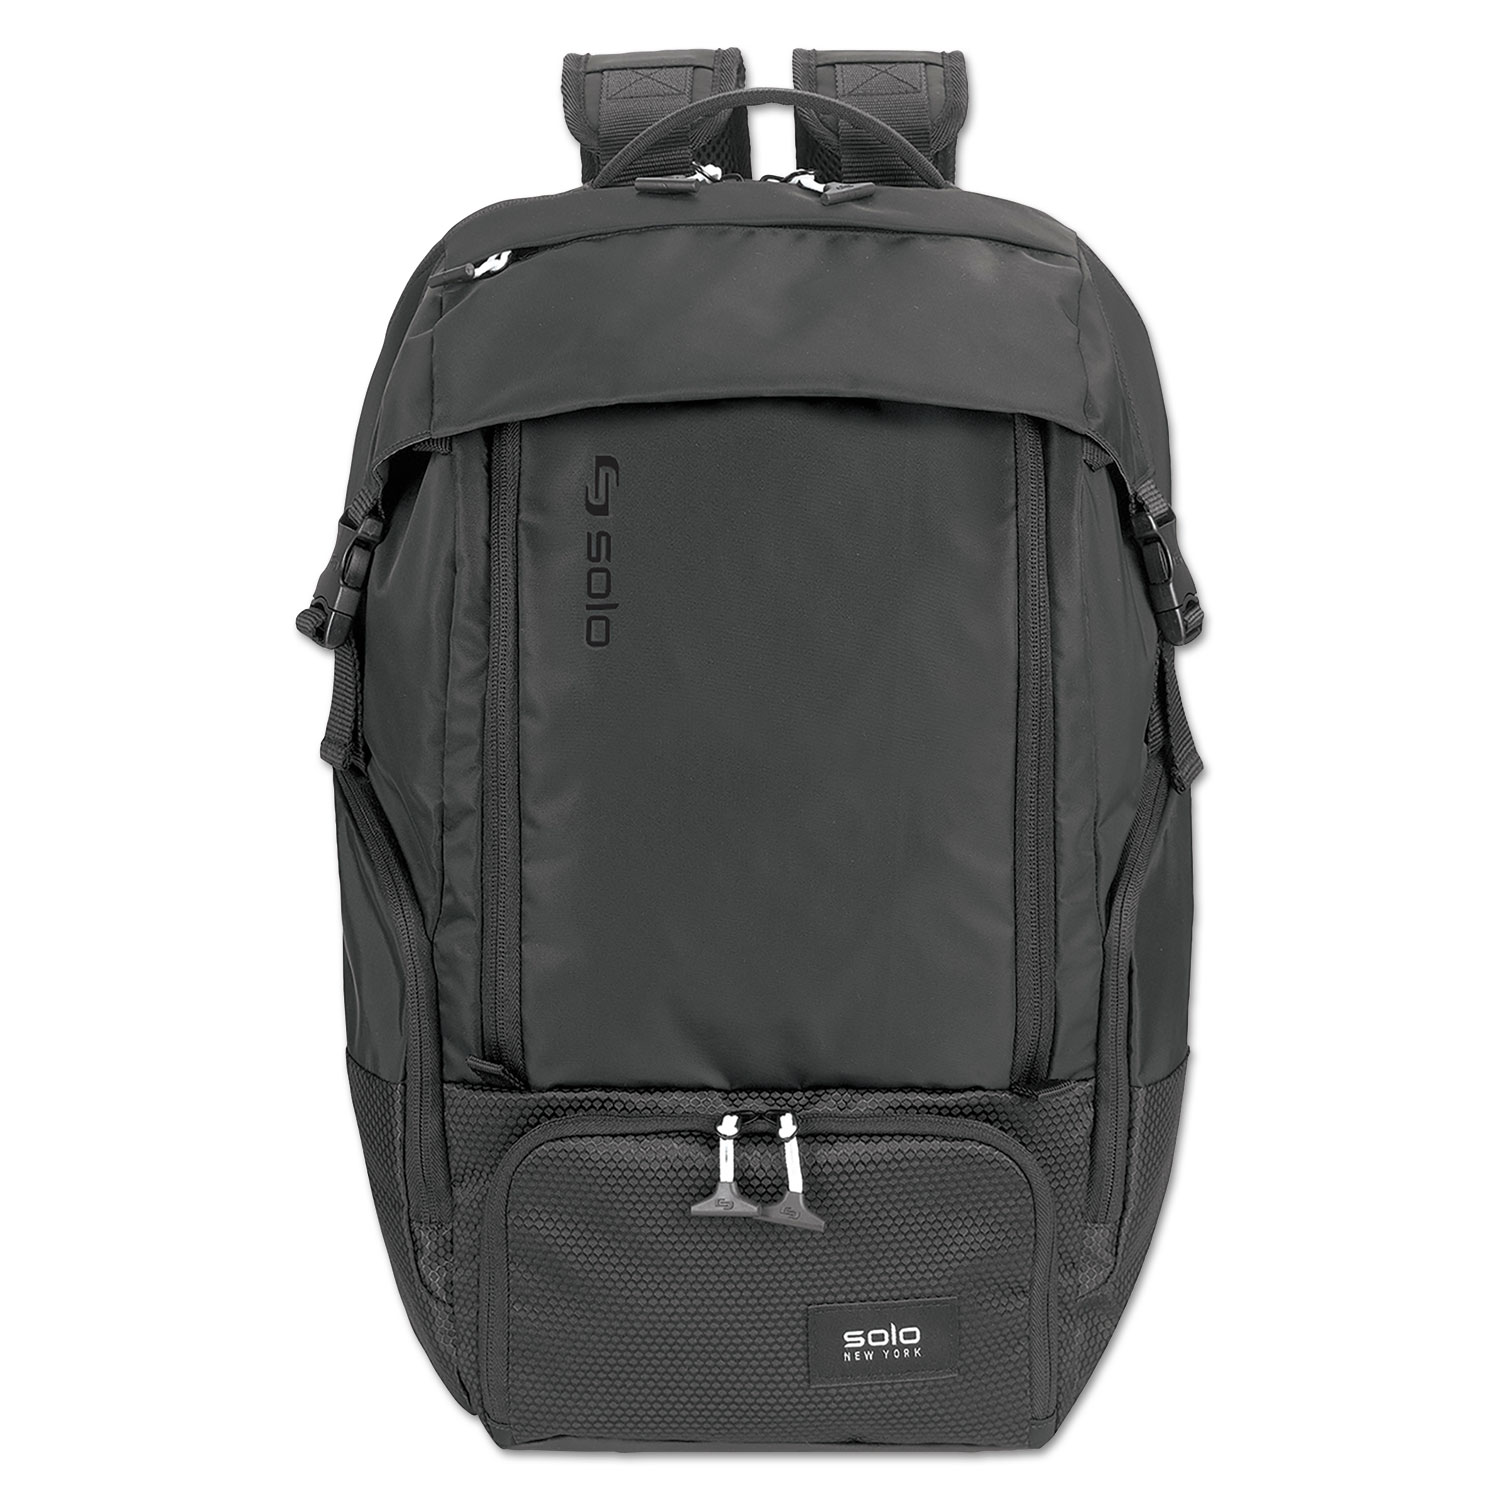  Solo VAR702-4 Elite Backpack, 5.25 x 21.5 x 21.5, Nylon, Black (USLVAR7024) 